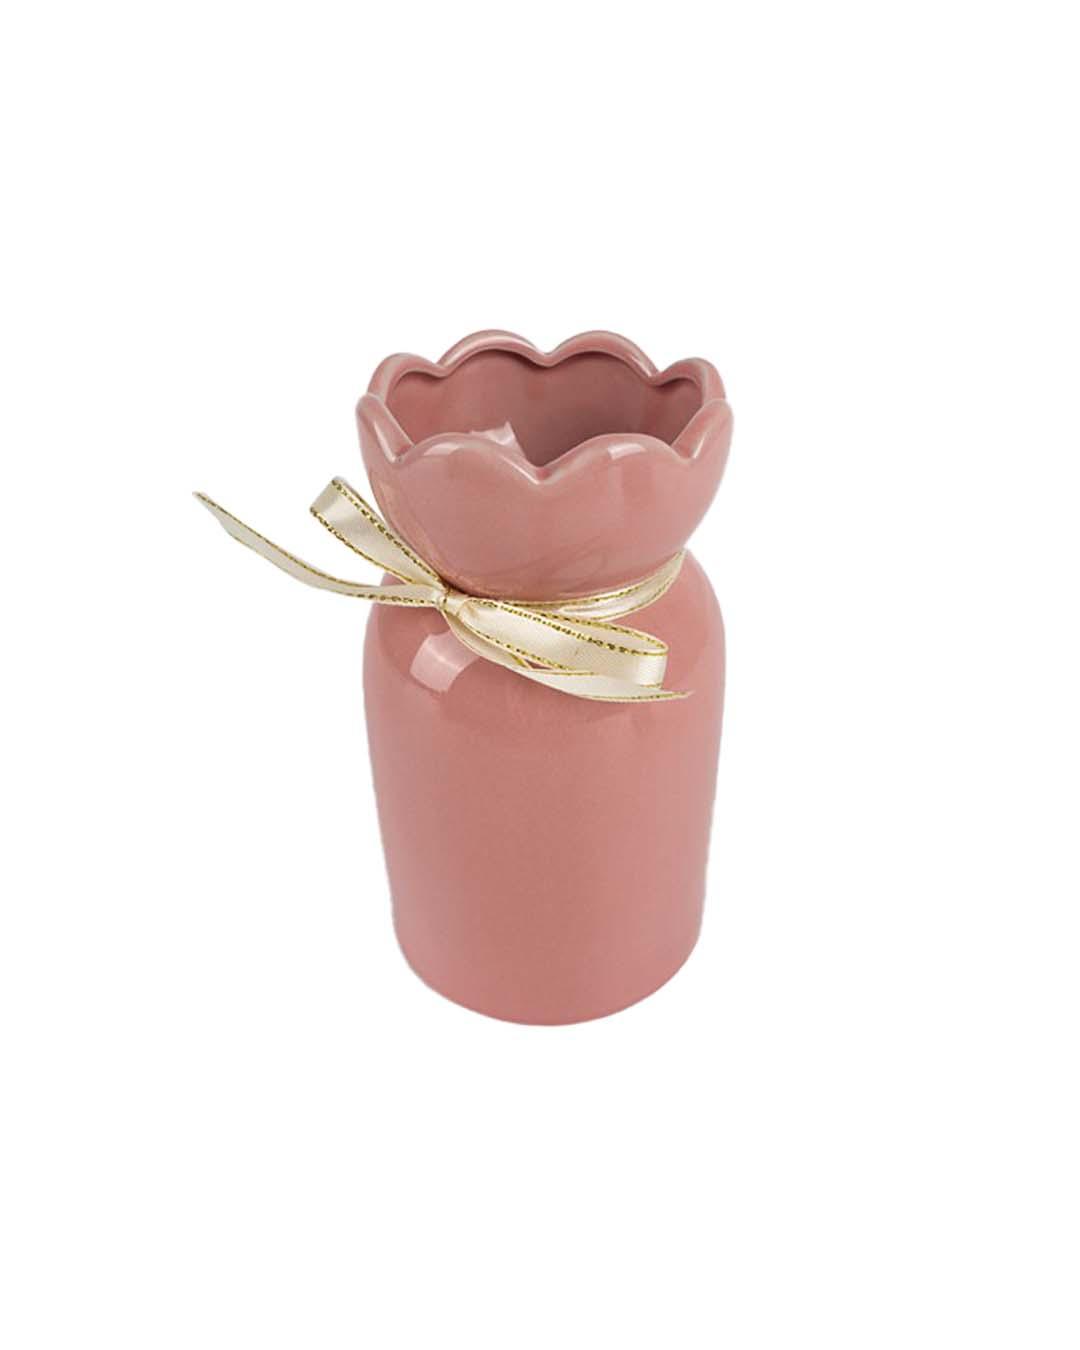 Solid Vase, Floral Shaped Mouth, Pink, Ceramic - MARKET 99